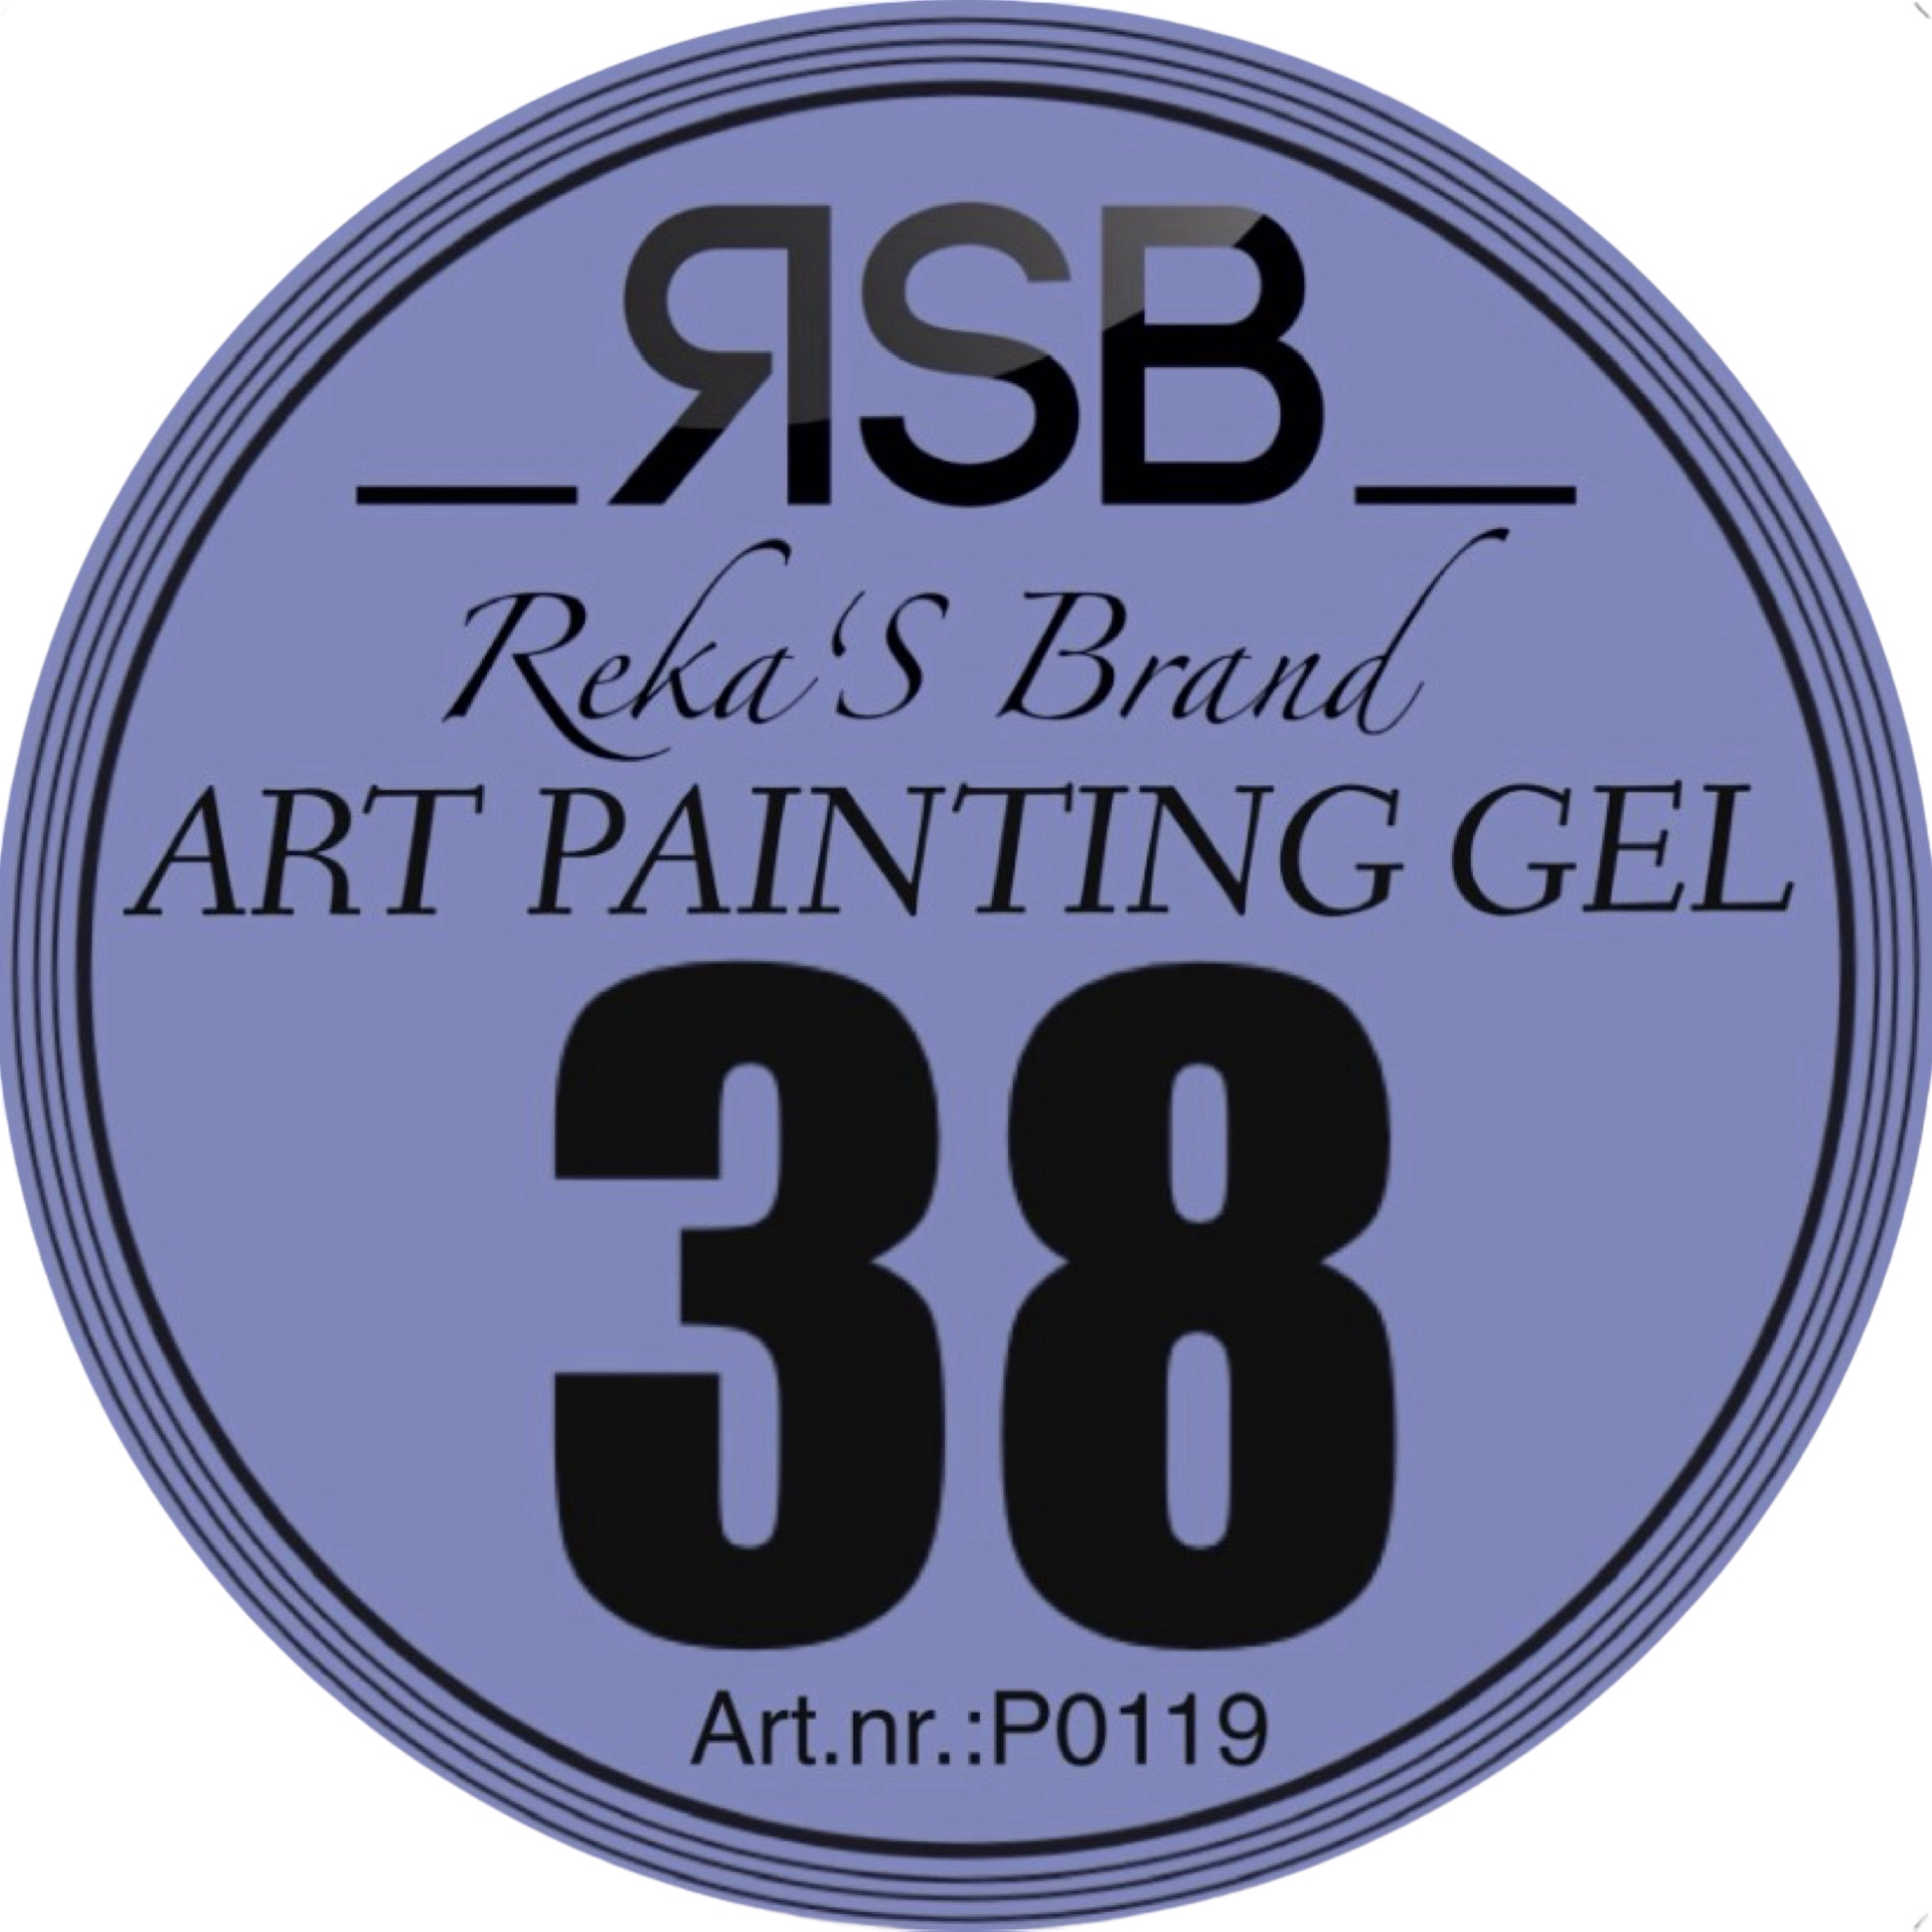 ART PAINTING GEL 38